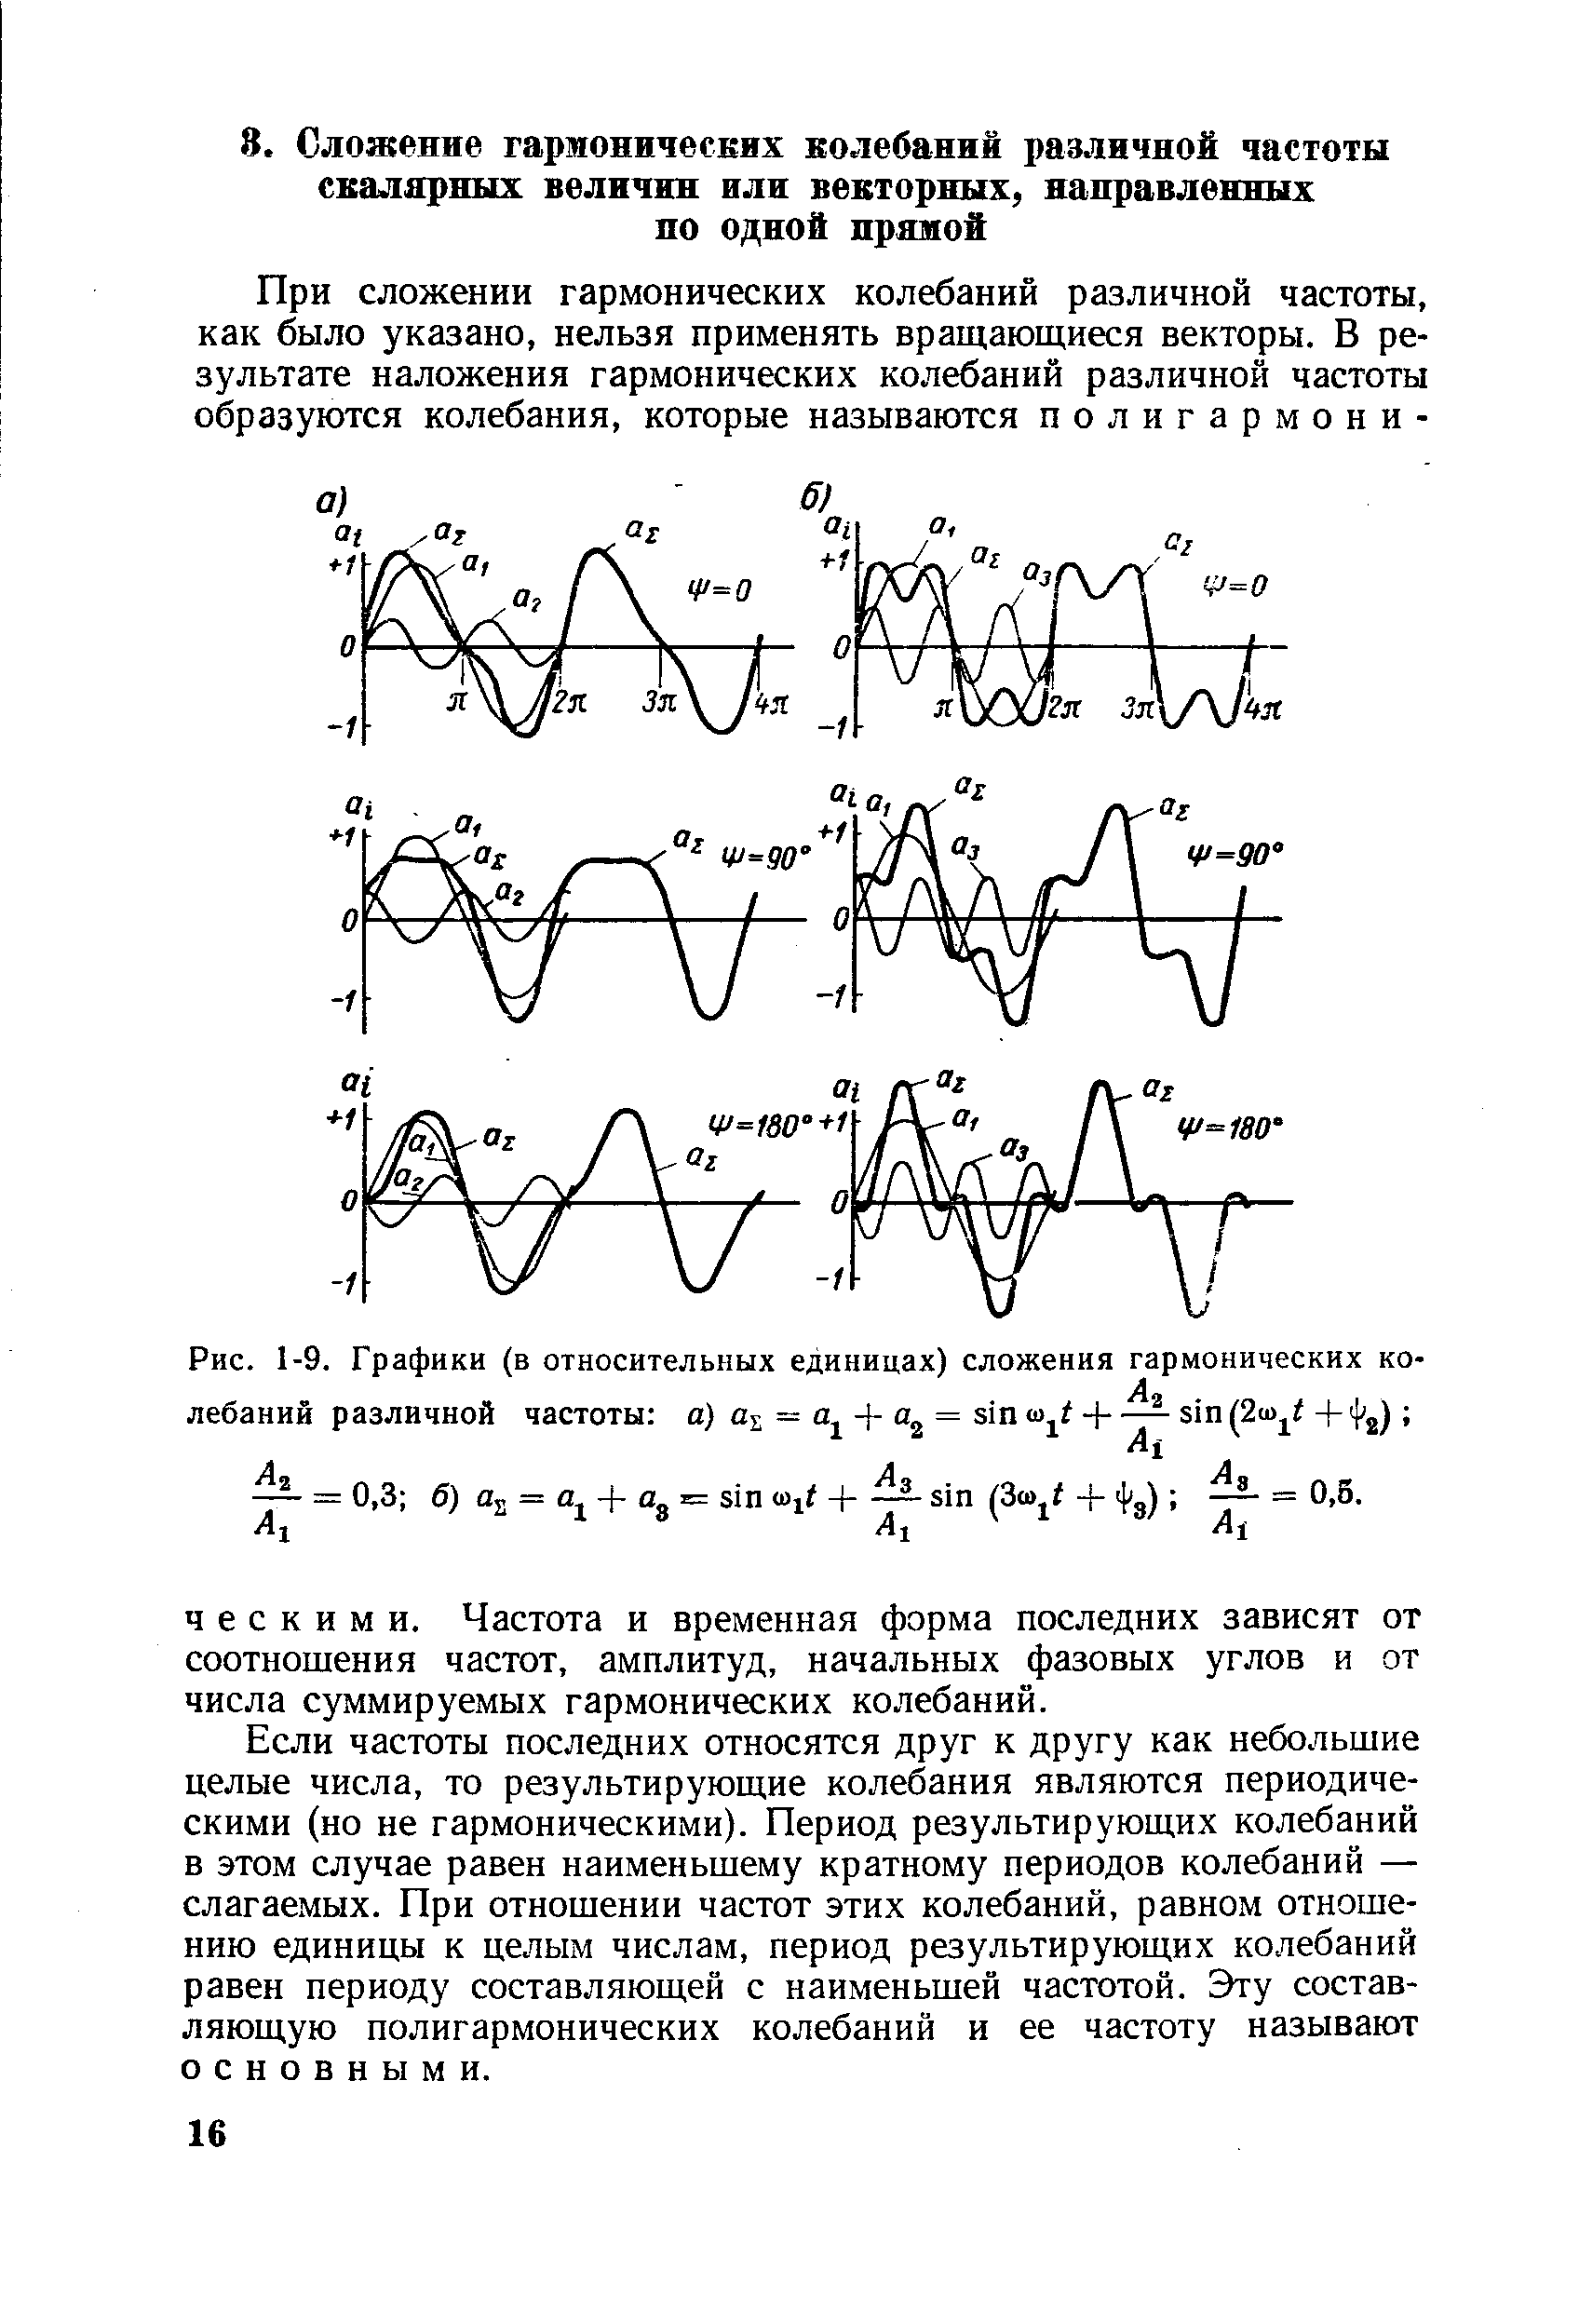 Рис. 1-9. Графики (в <a href="/info/197602">относительных единицах</a>) сложения гармонических колебаний различной частоты а) aj = = sin -j--- sin (2u> t + >
